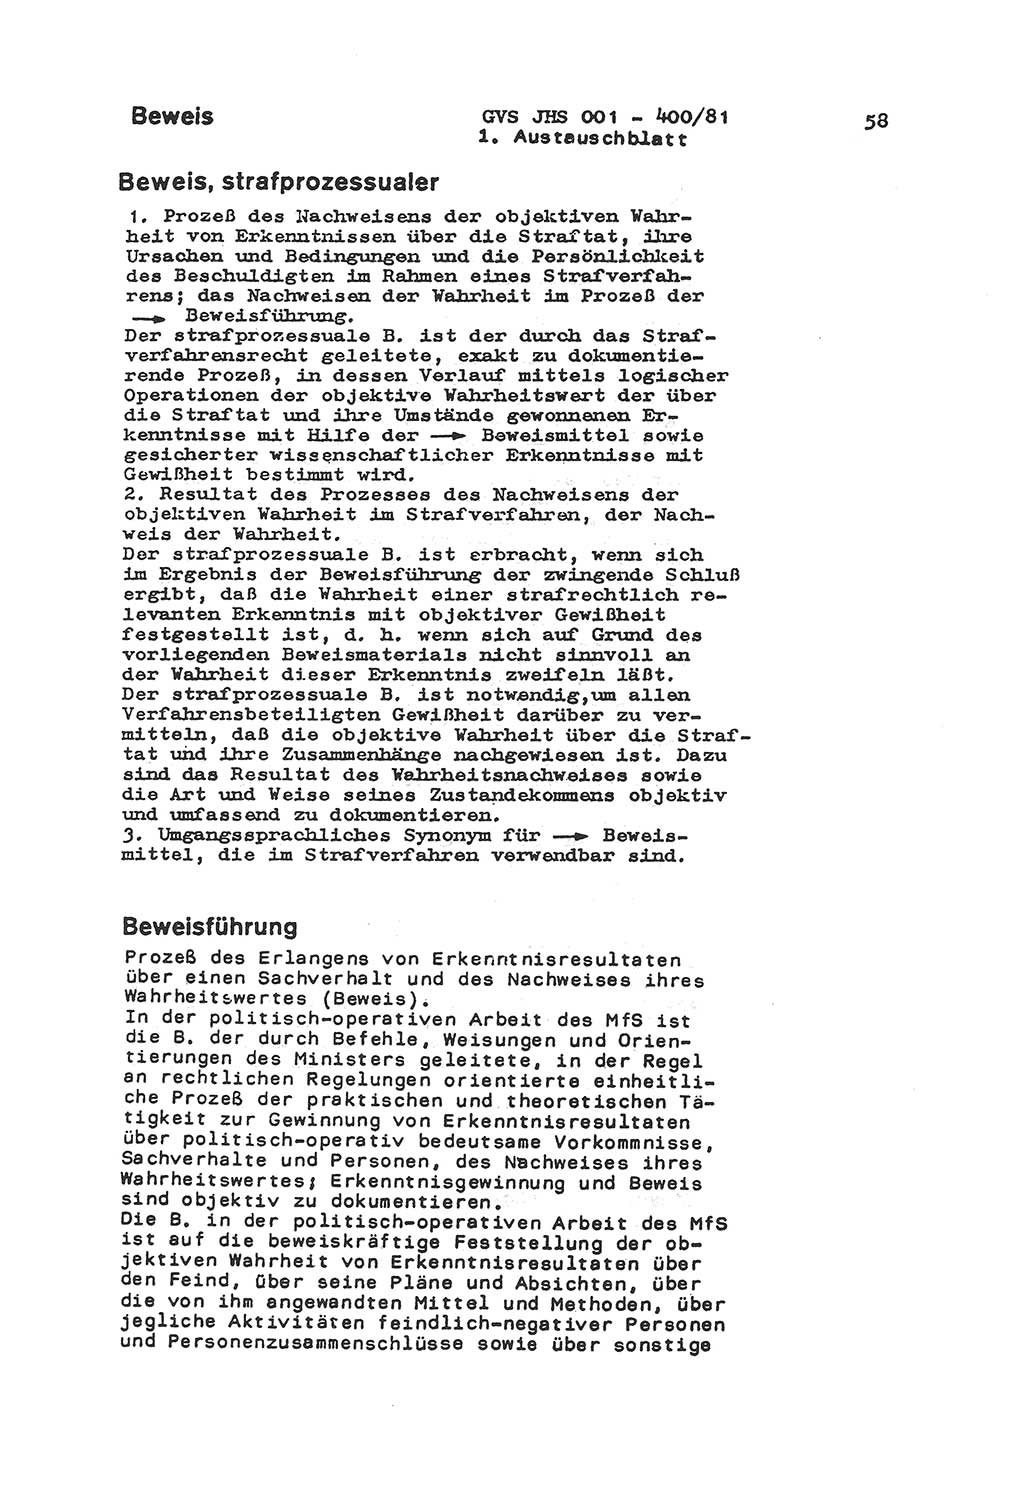 Wörterbuch der politisch-operativen Arbeit, Ministerium für Staatssicherheit (MfS) [Deutsche Demokratische Republik (DDR)], Juristische Hochschule (JHS), Geheime Verschlußsache (GVS) o001-400/81, Potsdam 1985, Blatt 58 (Wb. pol.-op. Arb. MfS DDR JHS GVS o001-400/81 1985, Bl. 58)